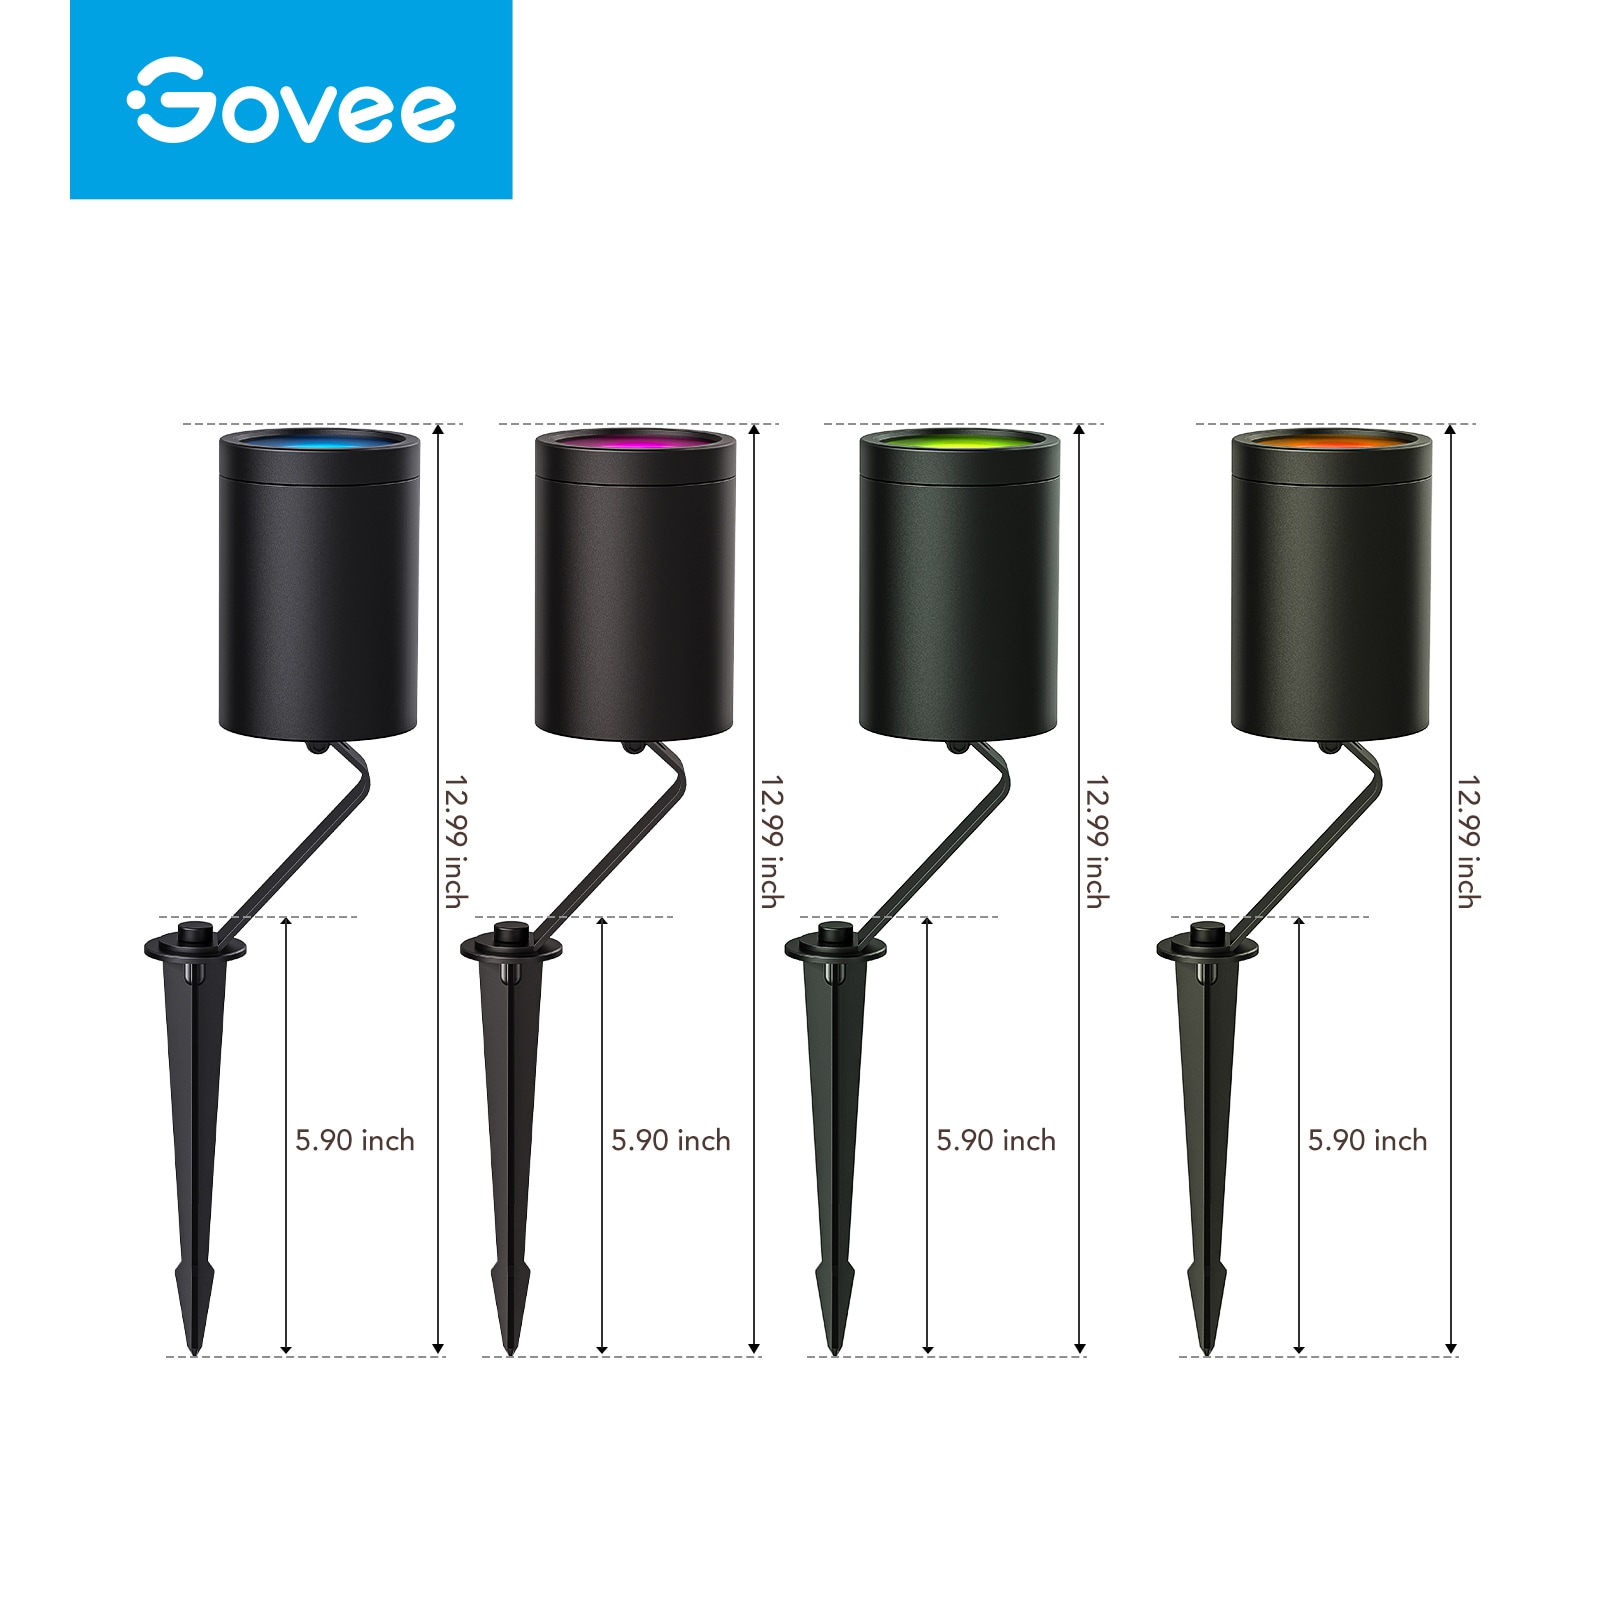 Govee Plug-in LED Night Lights – test-govee